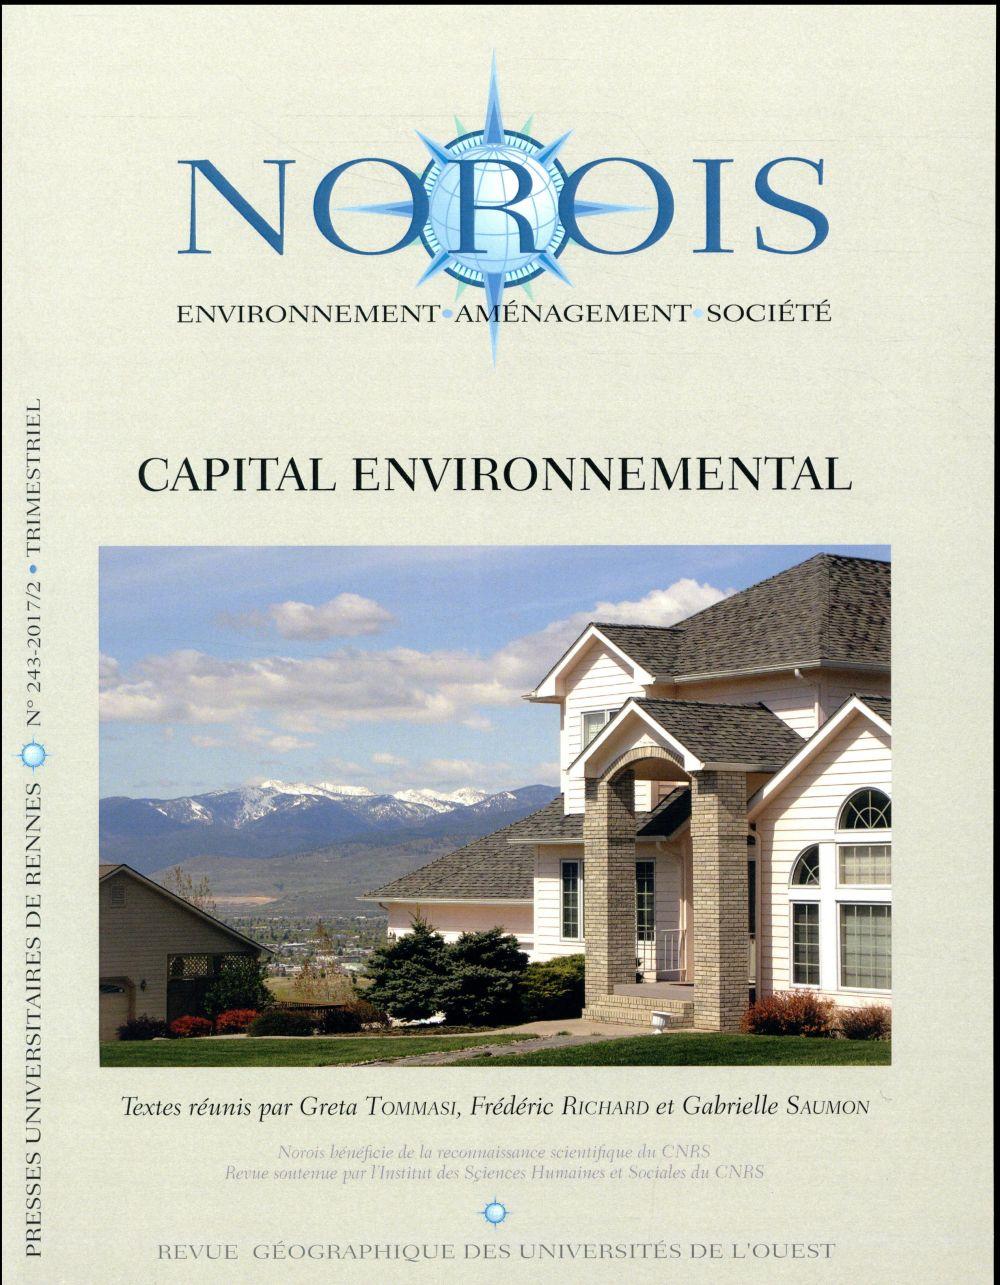 Vente Livre :                                    REVUE NOROIS ; capital environnemental
- Revue Norois  - Frederic Richard                                     